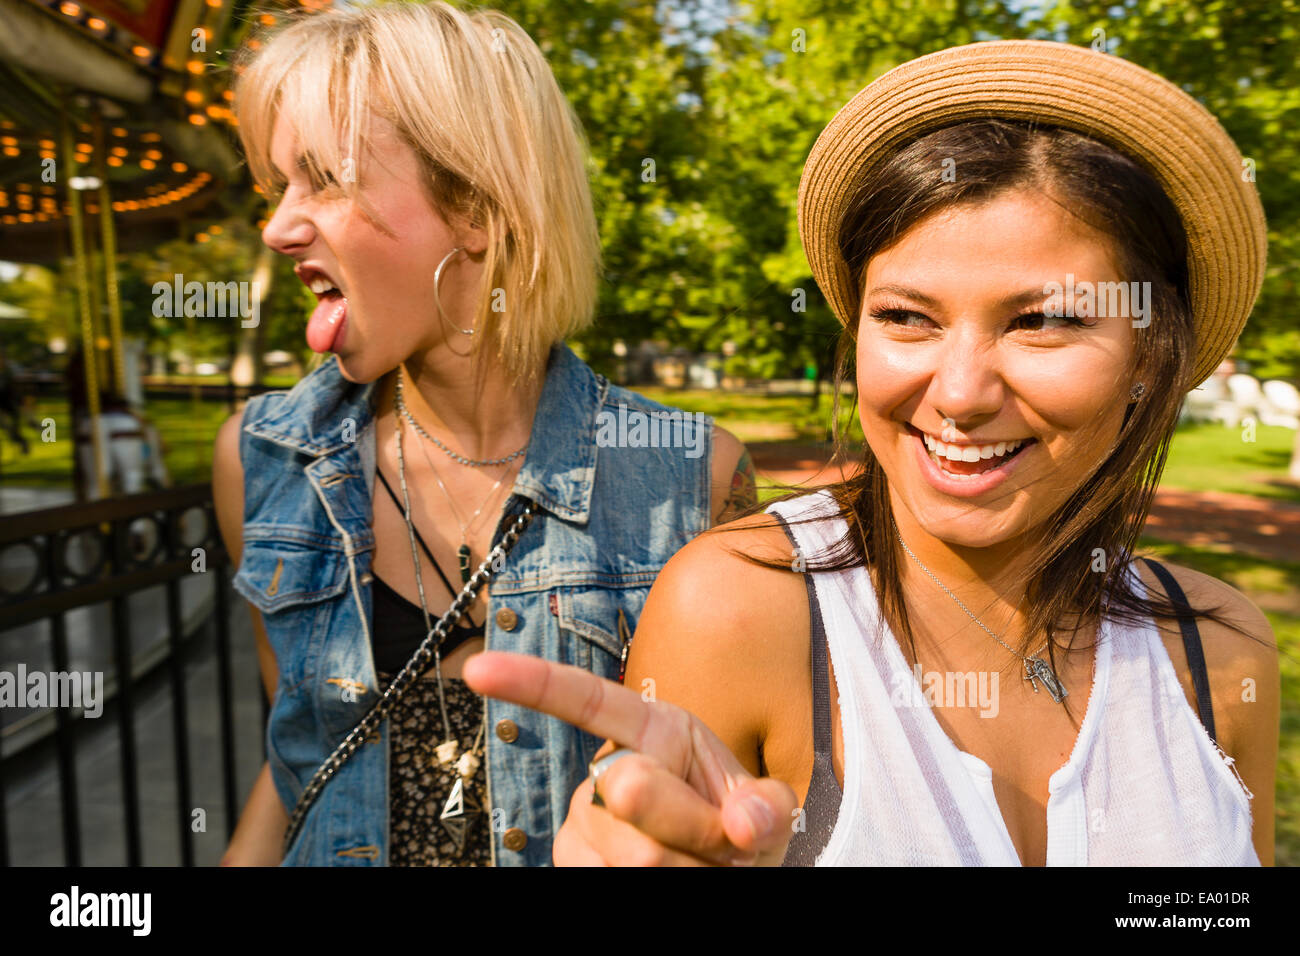 Zwei Junge Frauen Zeigen Und Zunge Im Park Stockfotografie Alamy 